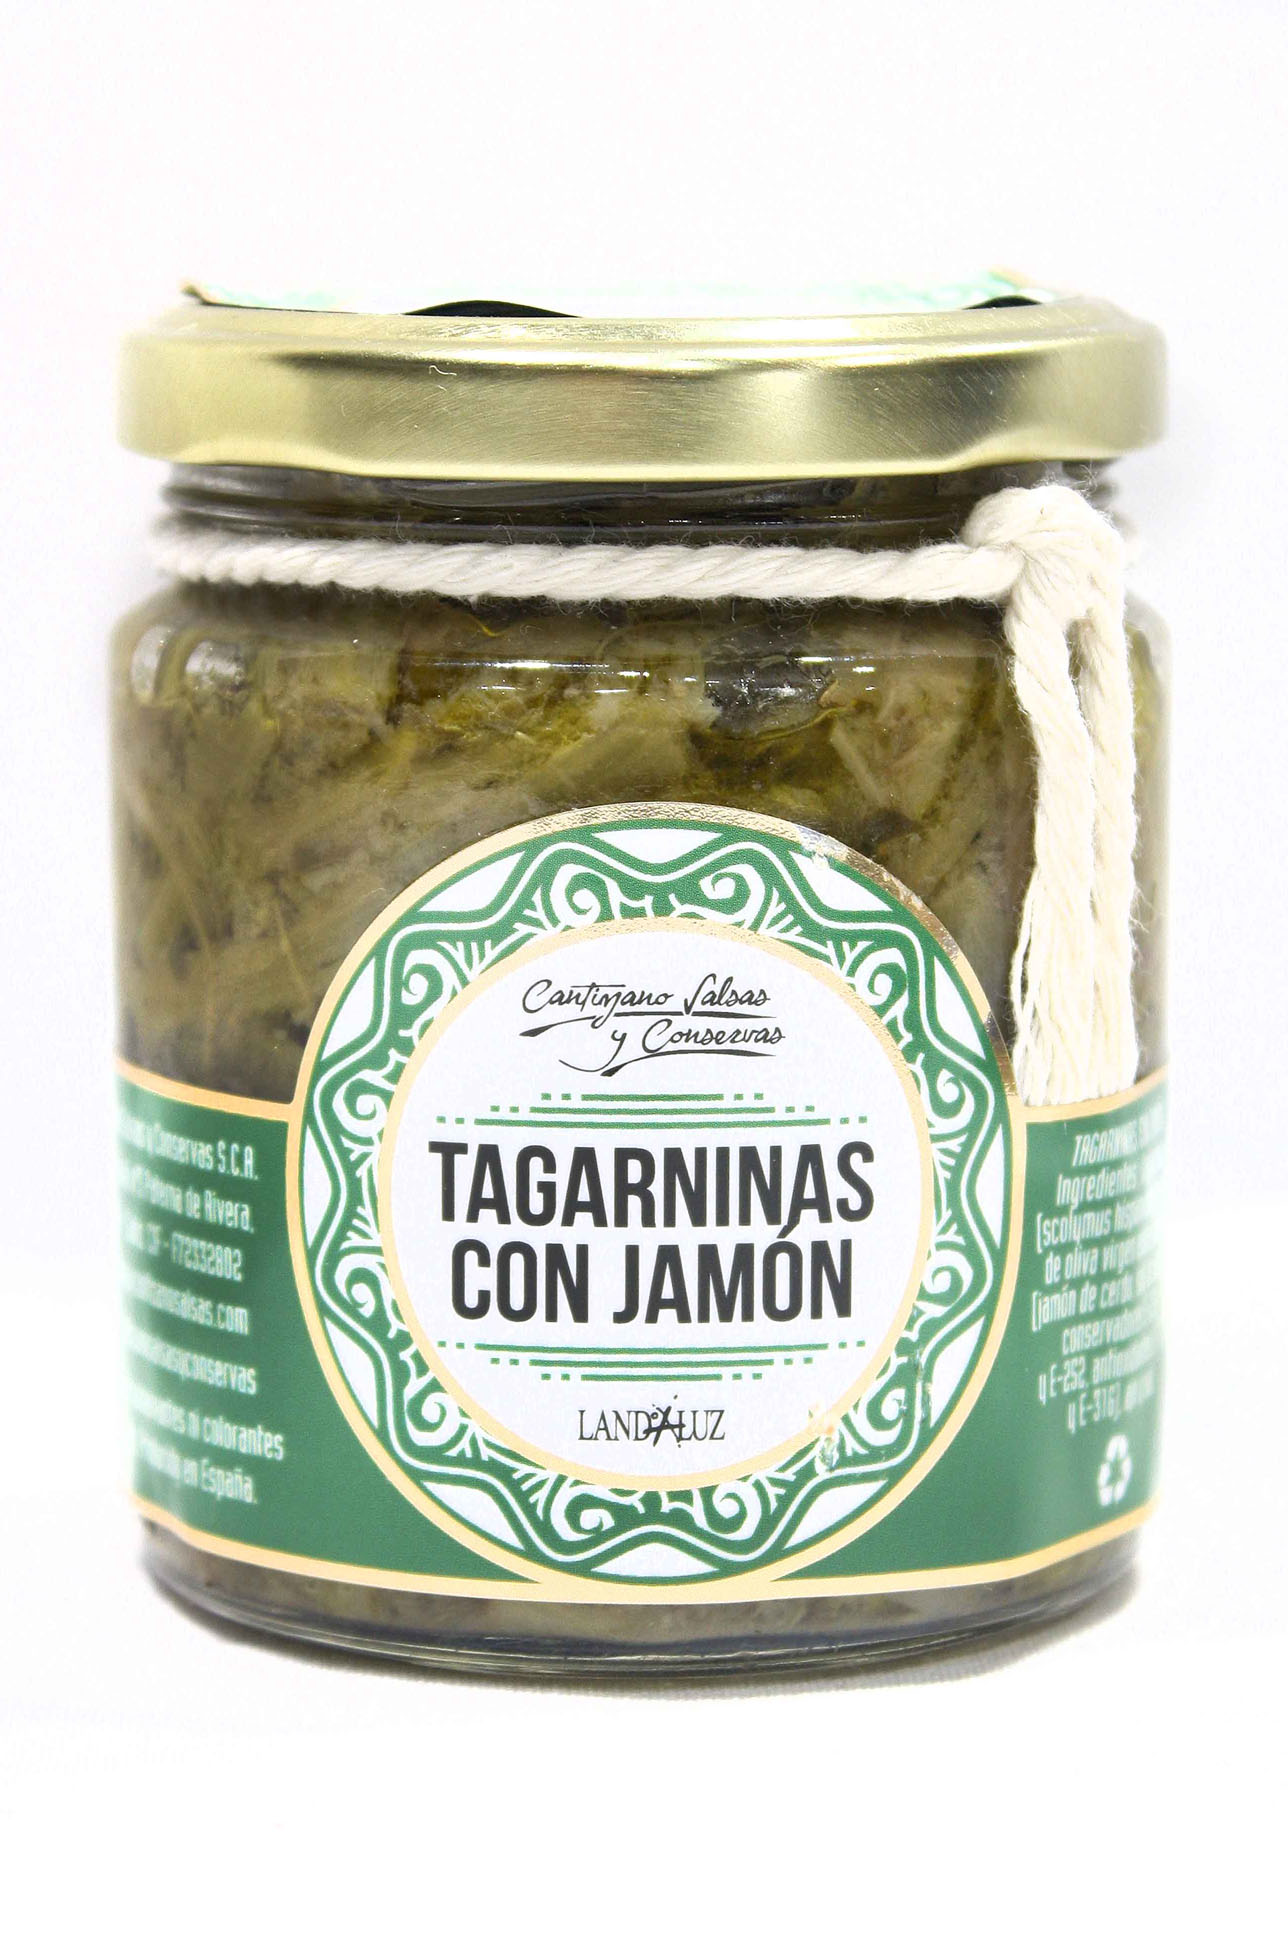 Tagarninas Con Jamón Cantizano salsas